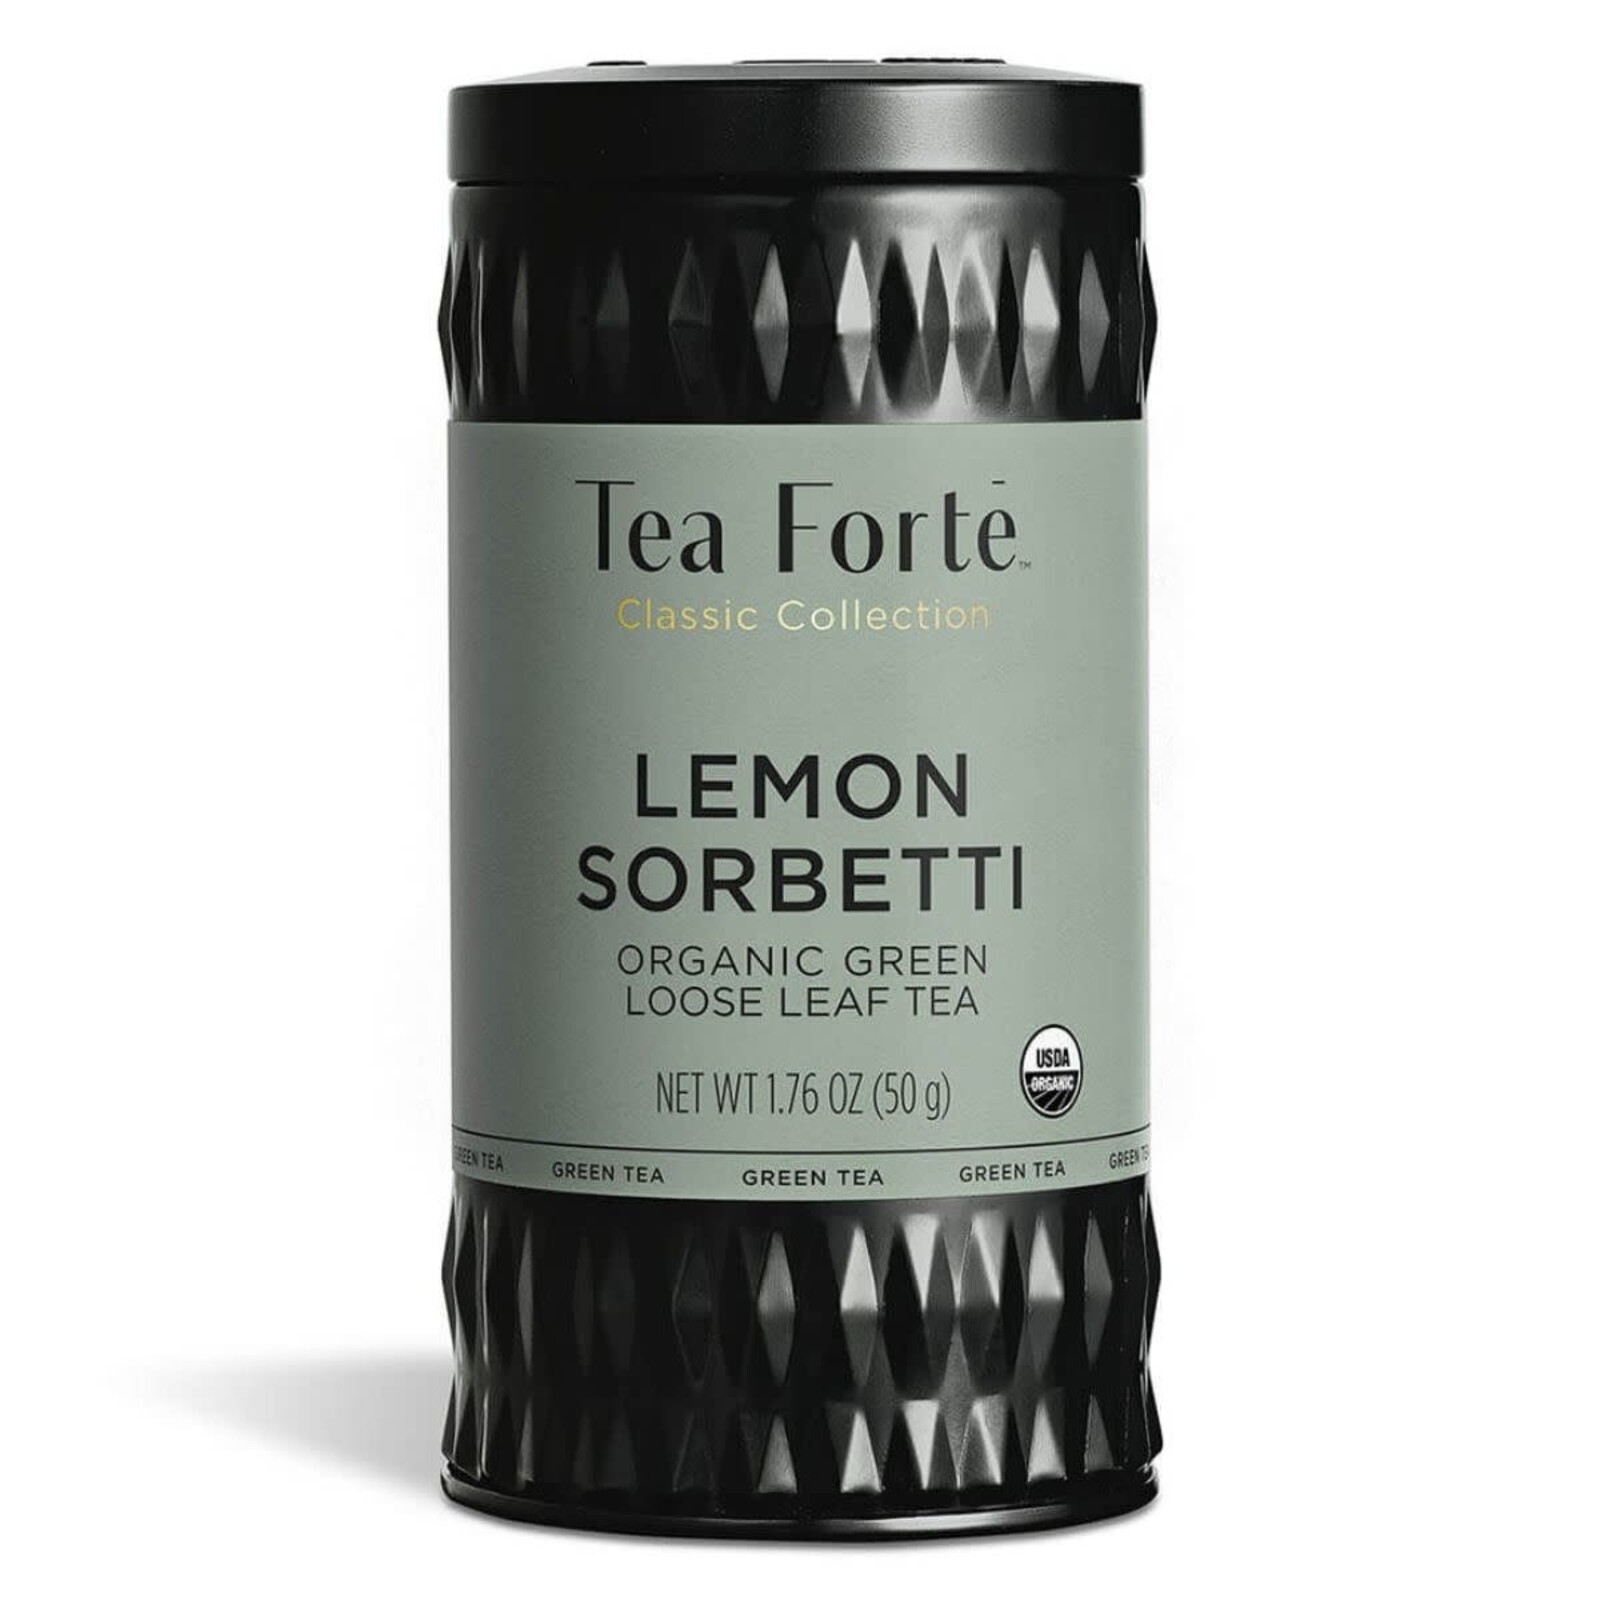 Tea Forte Lemon Sorbetti Loose Leaf loading=